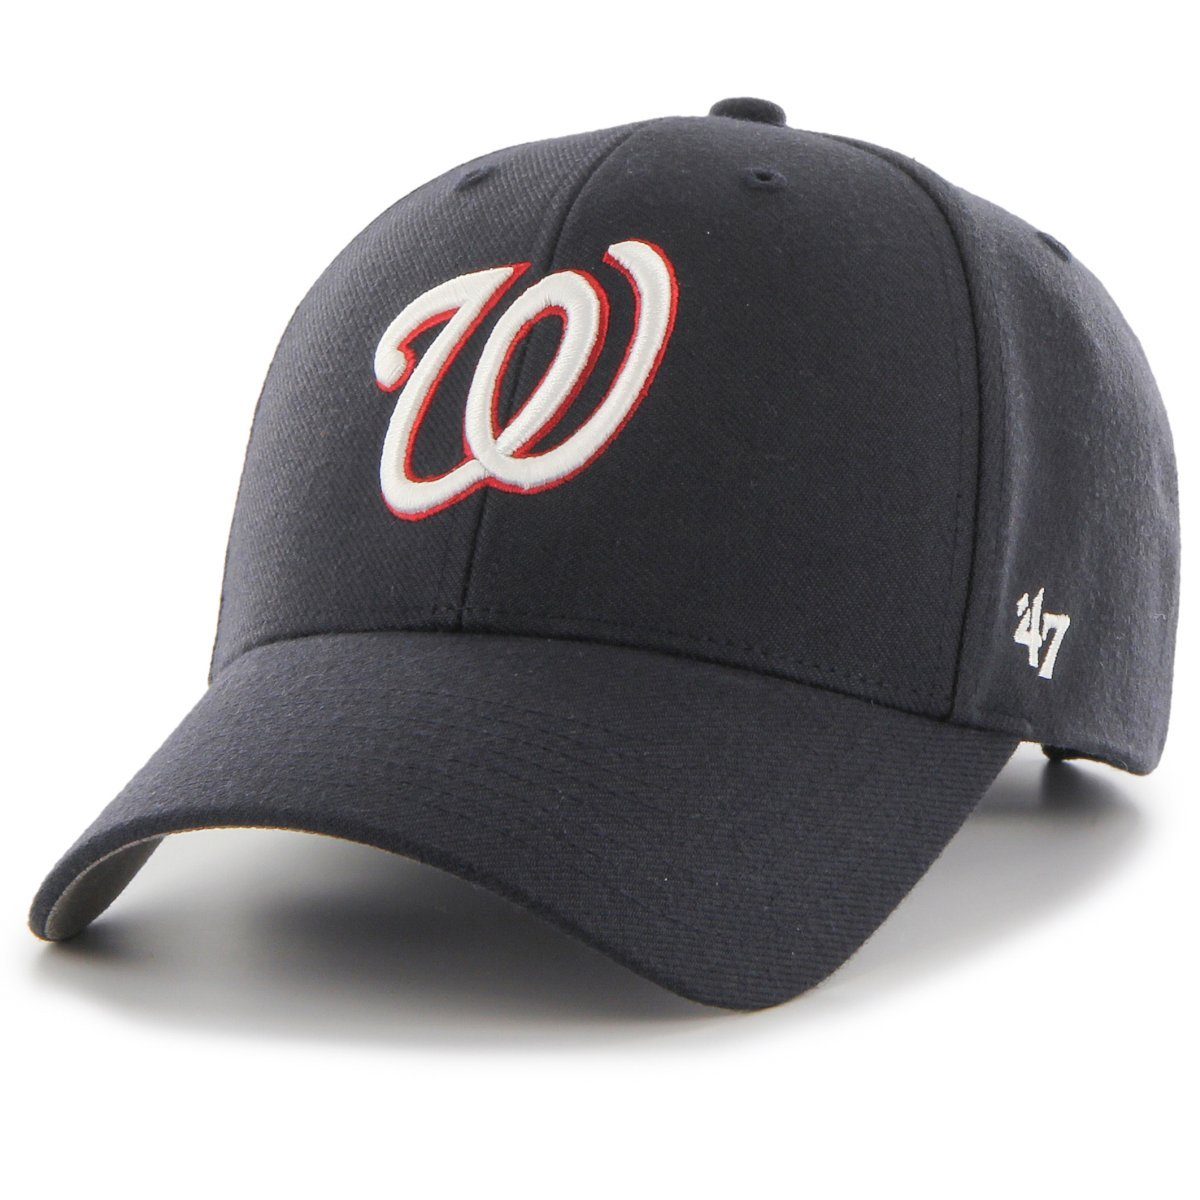 Washington '47 Nationals Cap Baseball MLB Brand